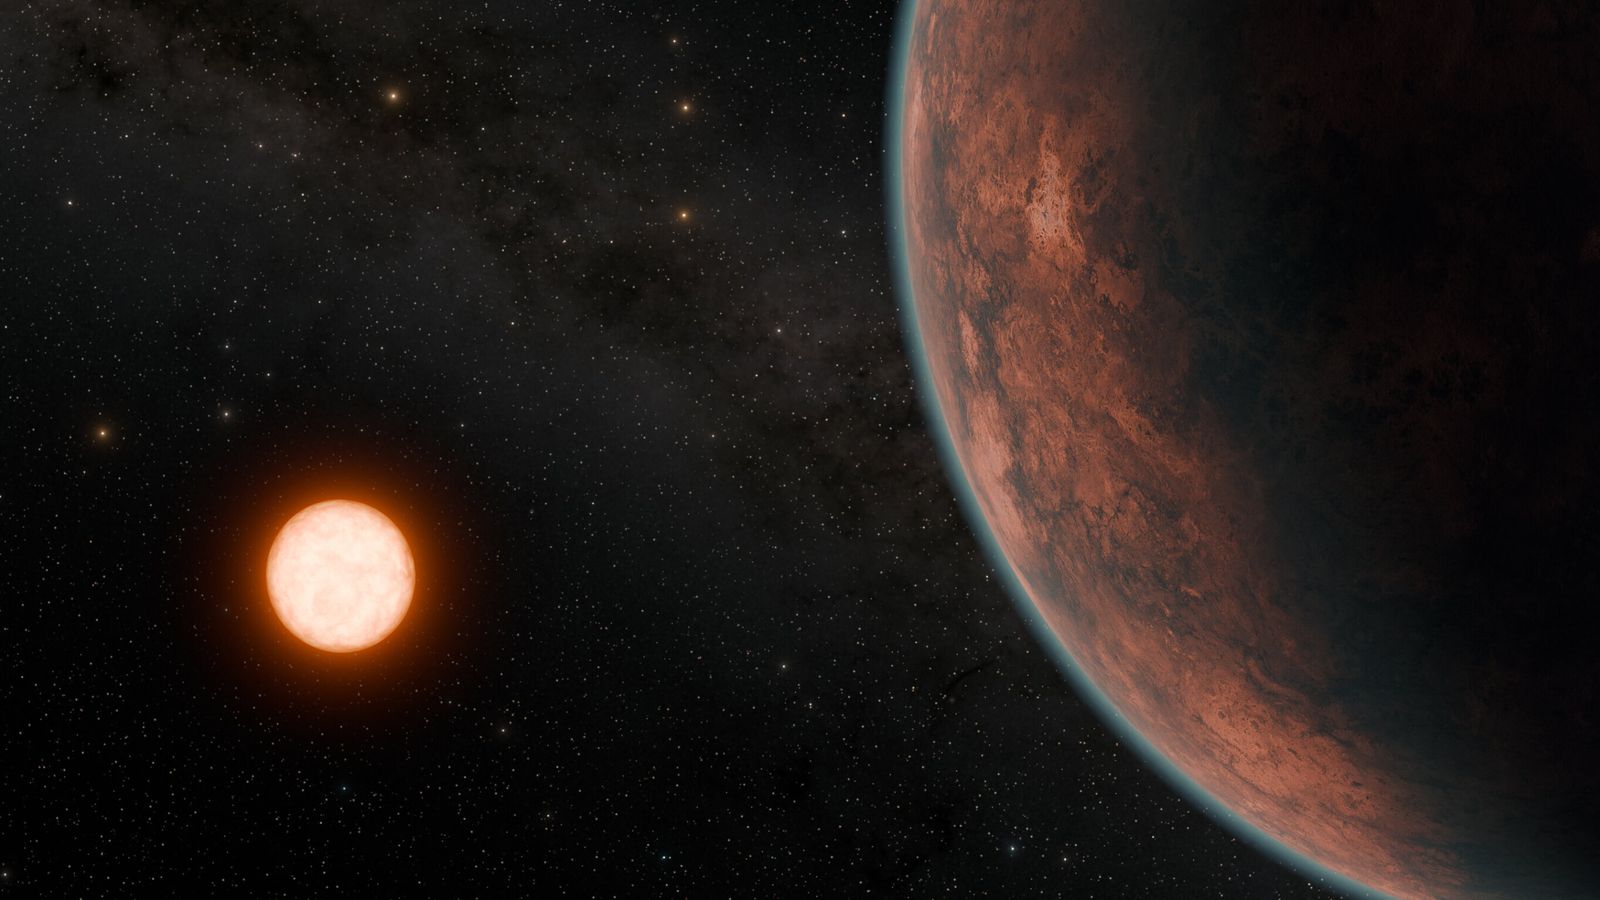 كوكب جديد يمكن أن يدعم الحياة البشرية اكتشفه علماء بريطانيون “أقرب” إلى الأرض |  أخبار العلوم والتكنولوجيا